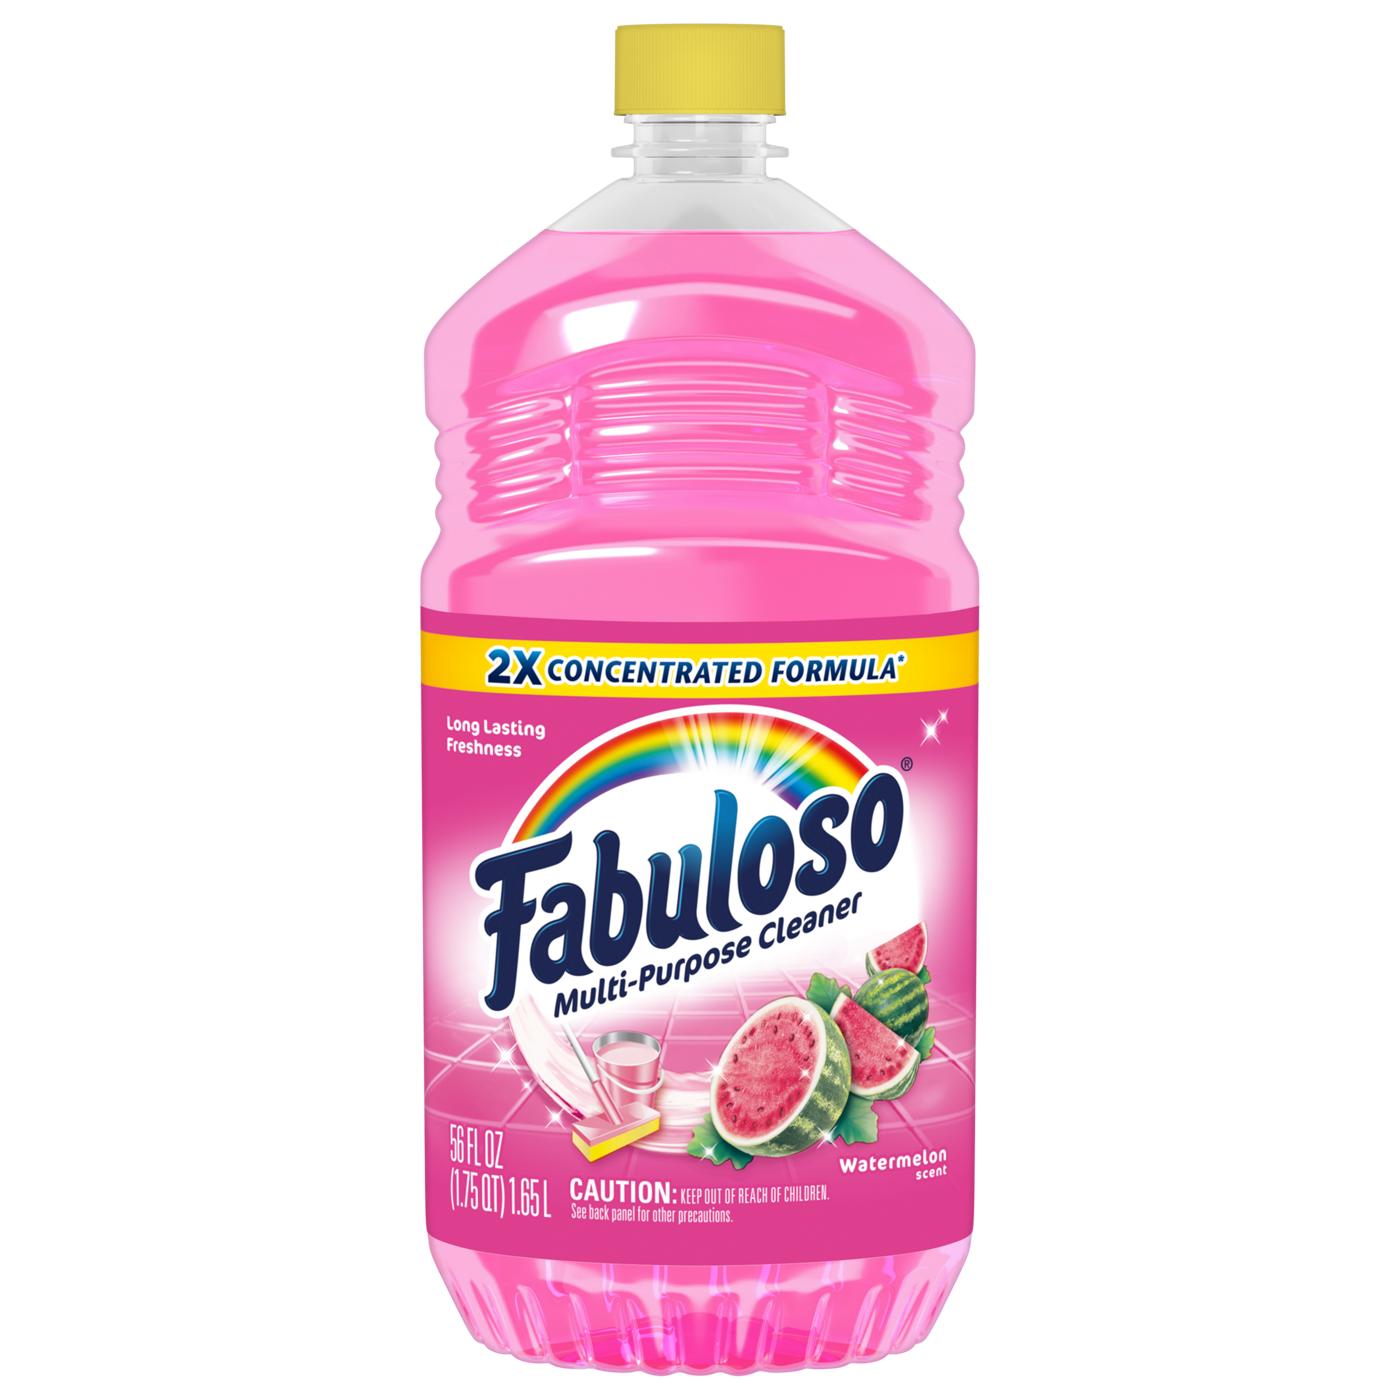 Fabuloso Watermelon Multi-Purpose Cleaner; image 1 of 2